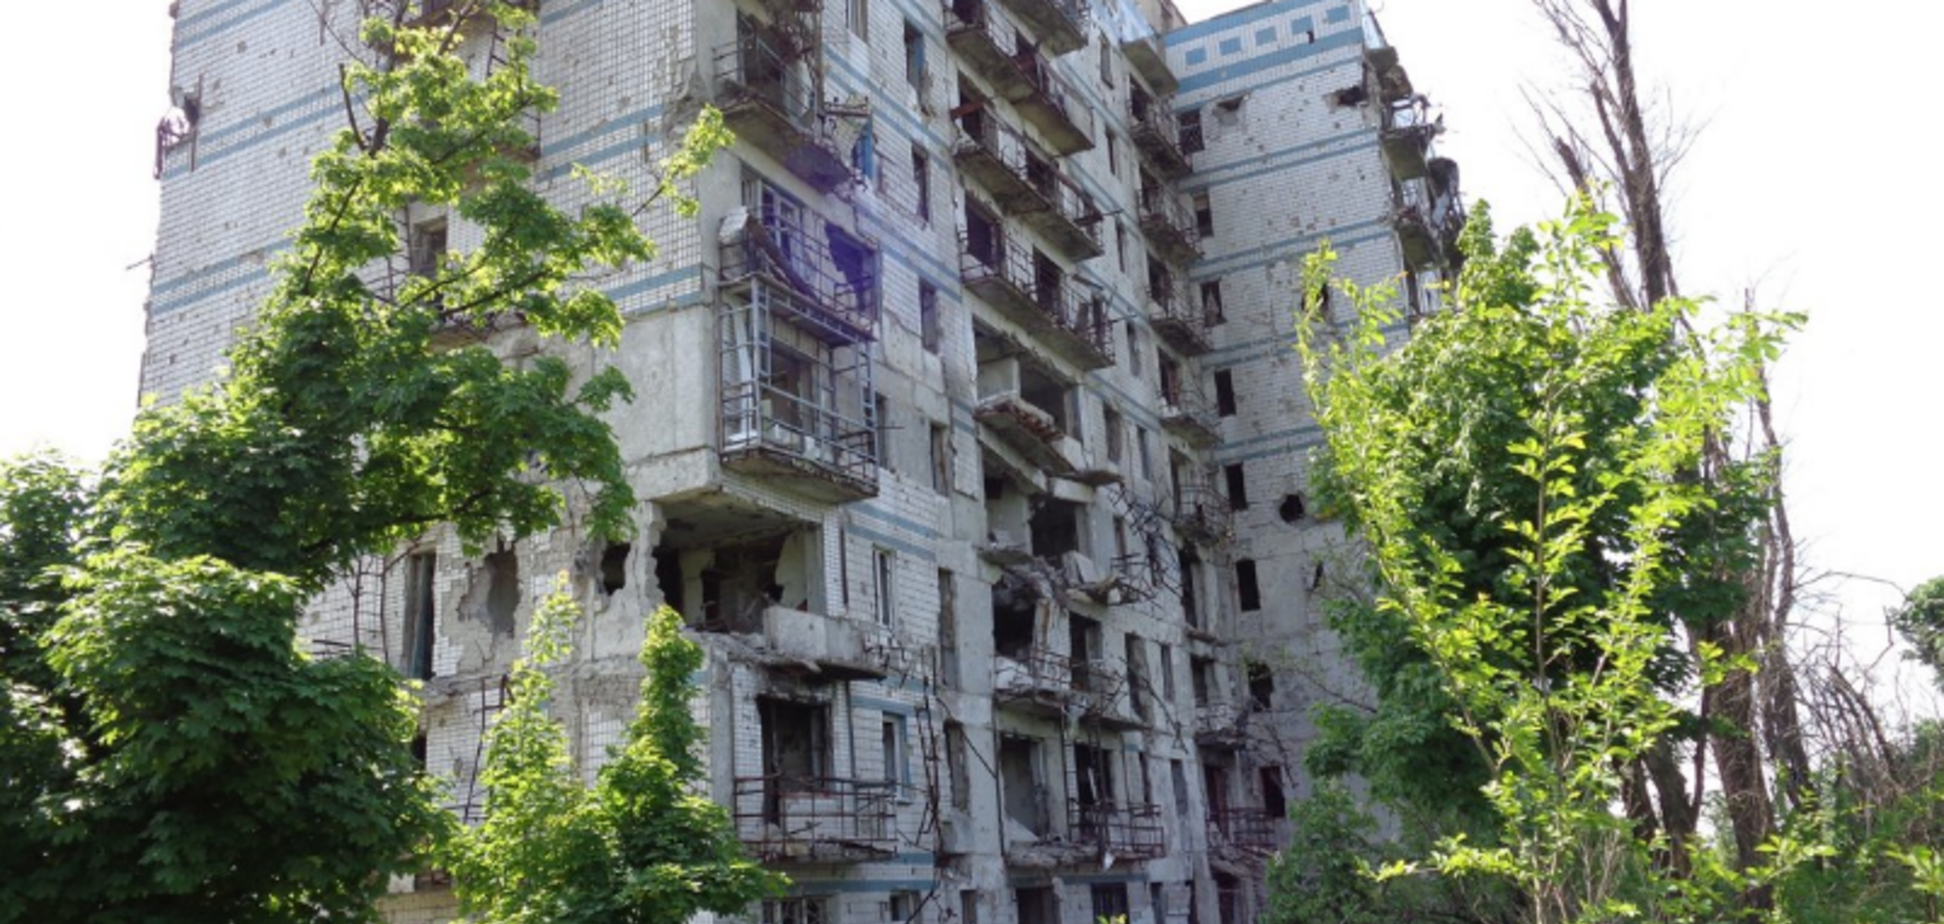 'Обглодали': в сети показали шокирующие фото с разрушенного Донбасса